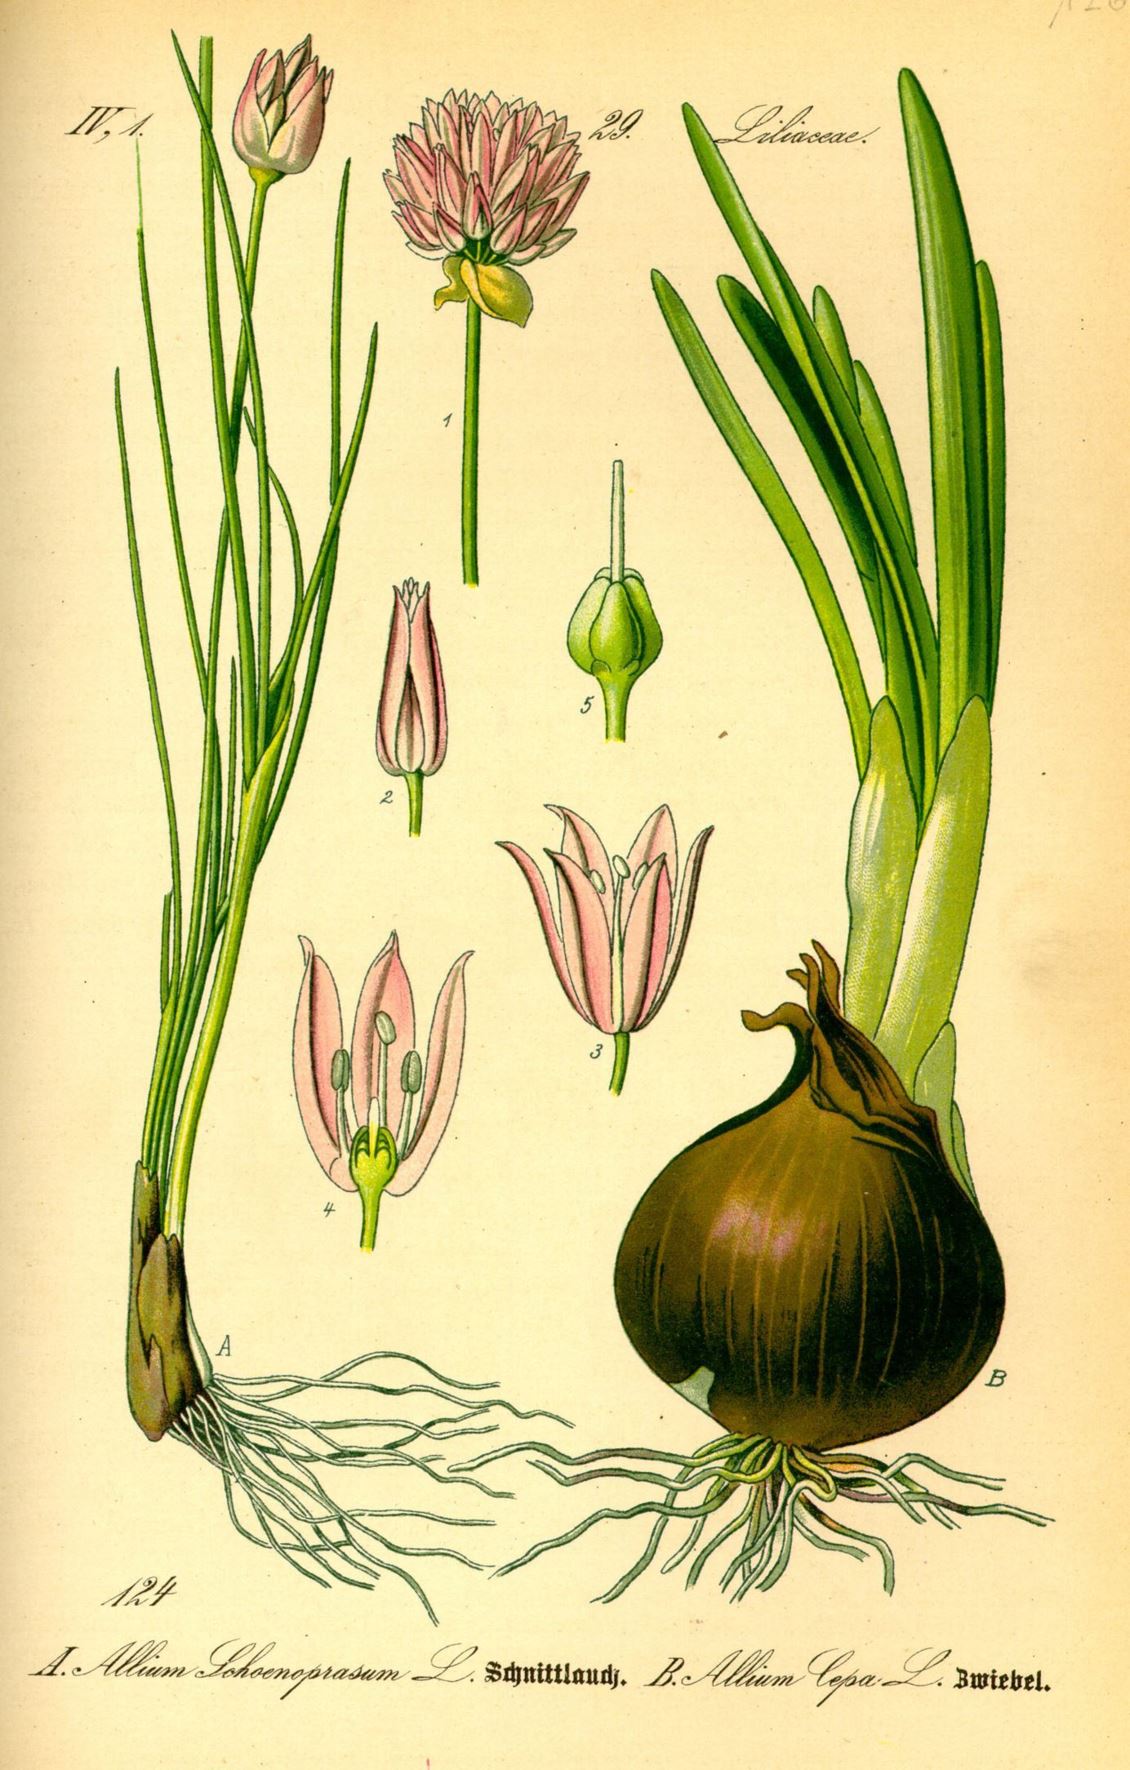 Allium schoenoprasum - Bieslook, Chives